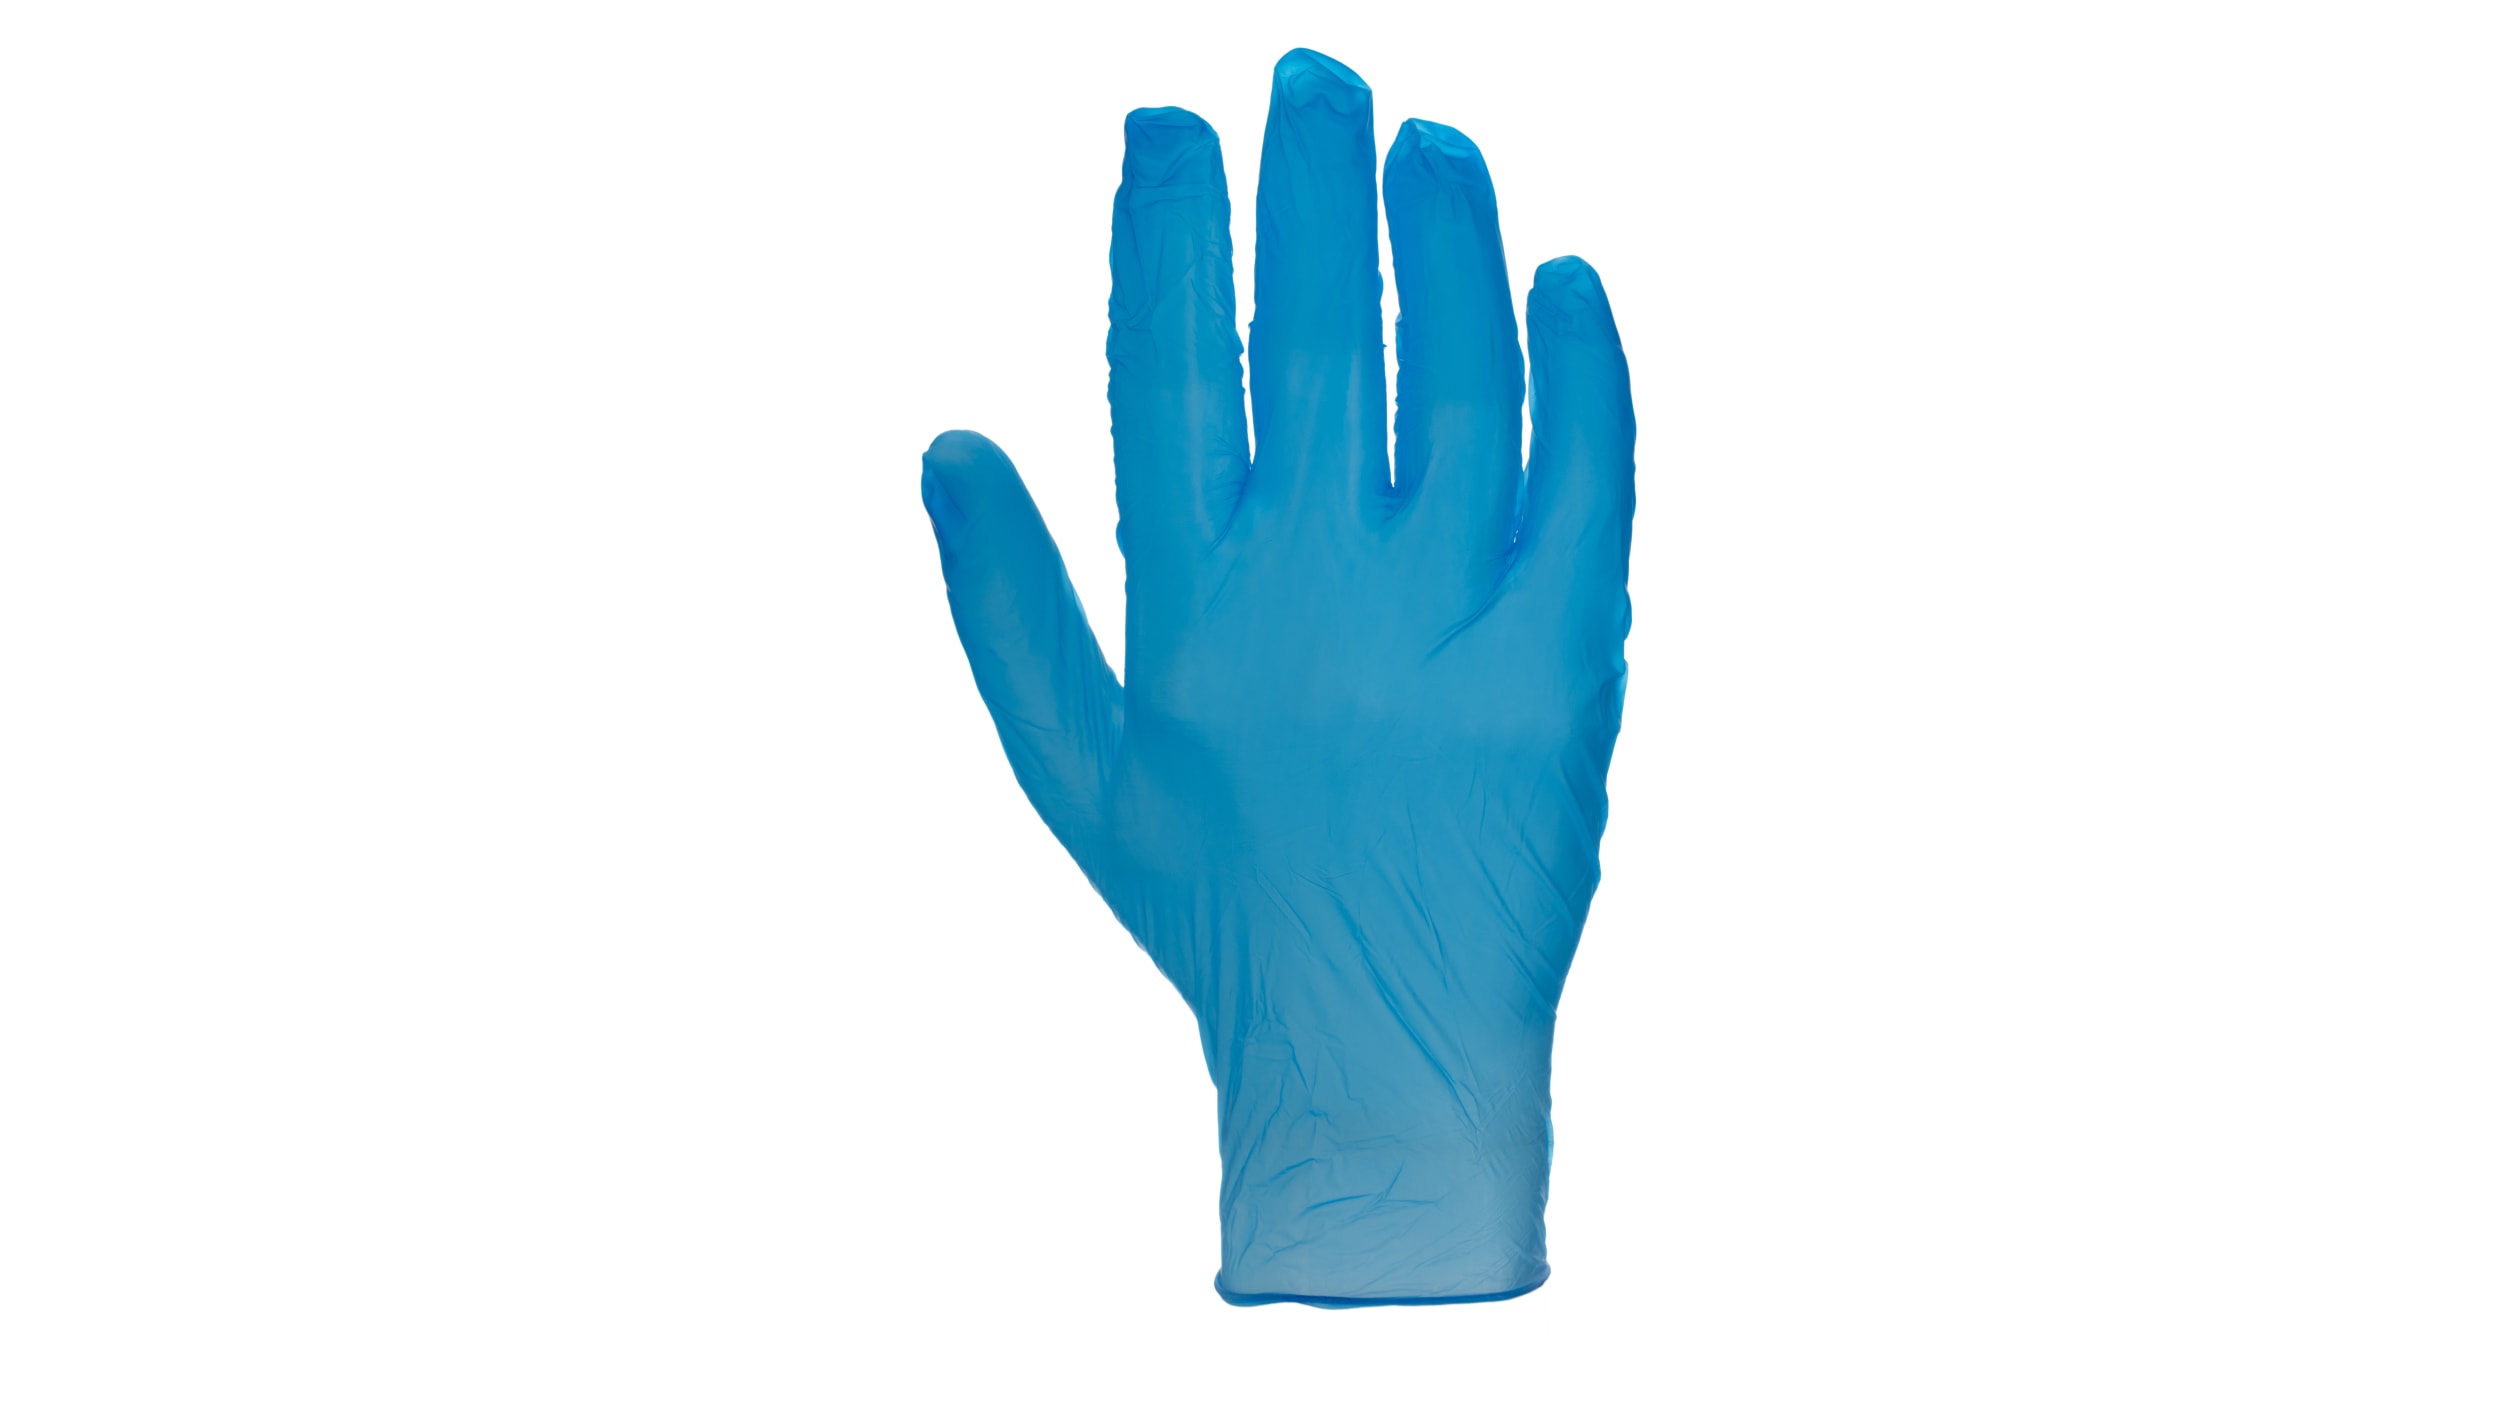 Les avantages des gants en nitrile, vinyle et des gants de ménage et d